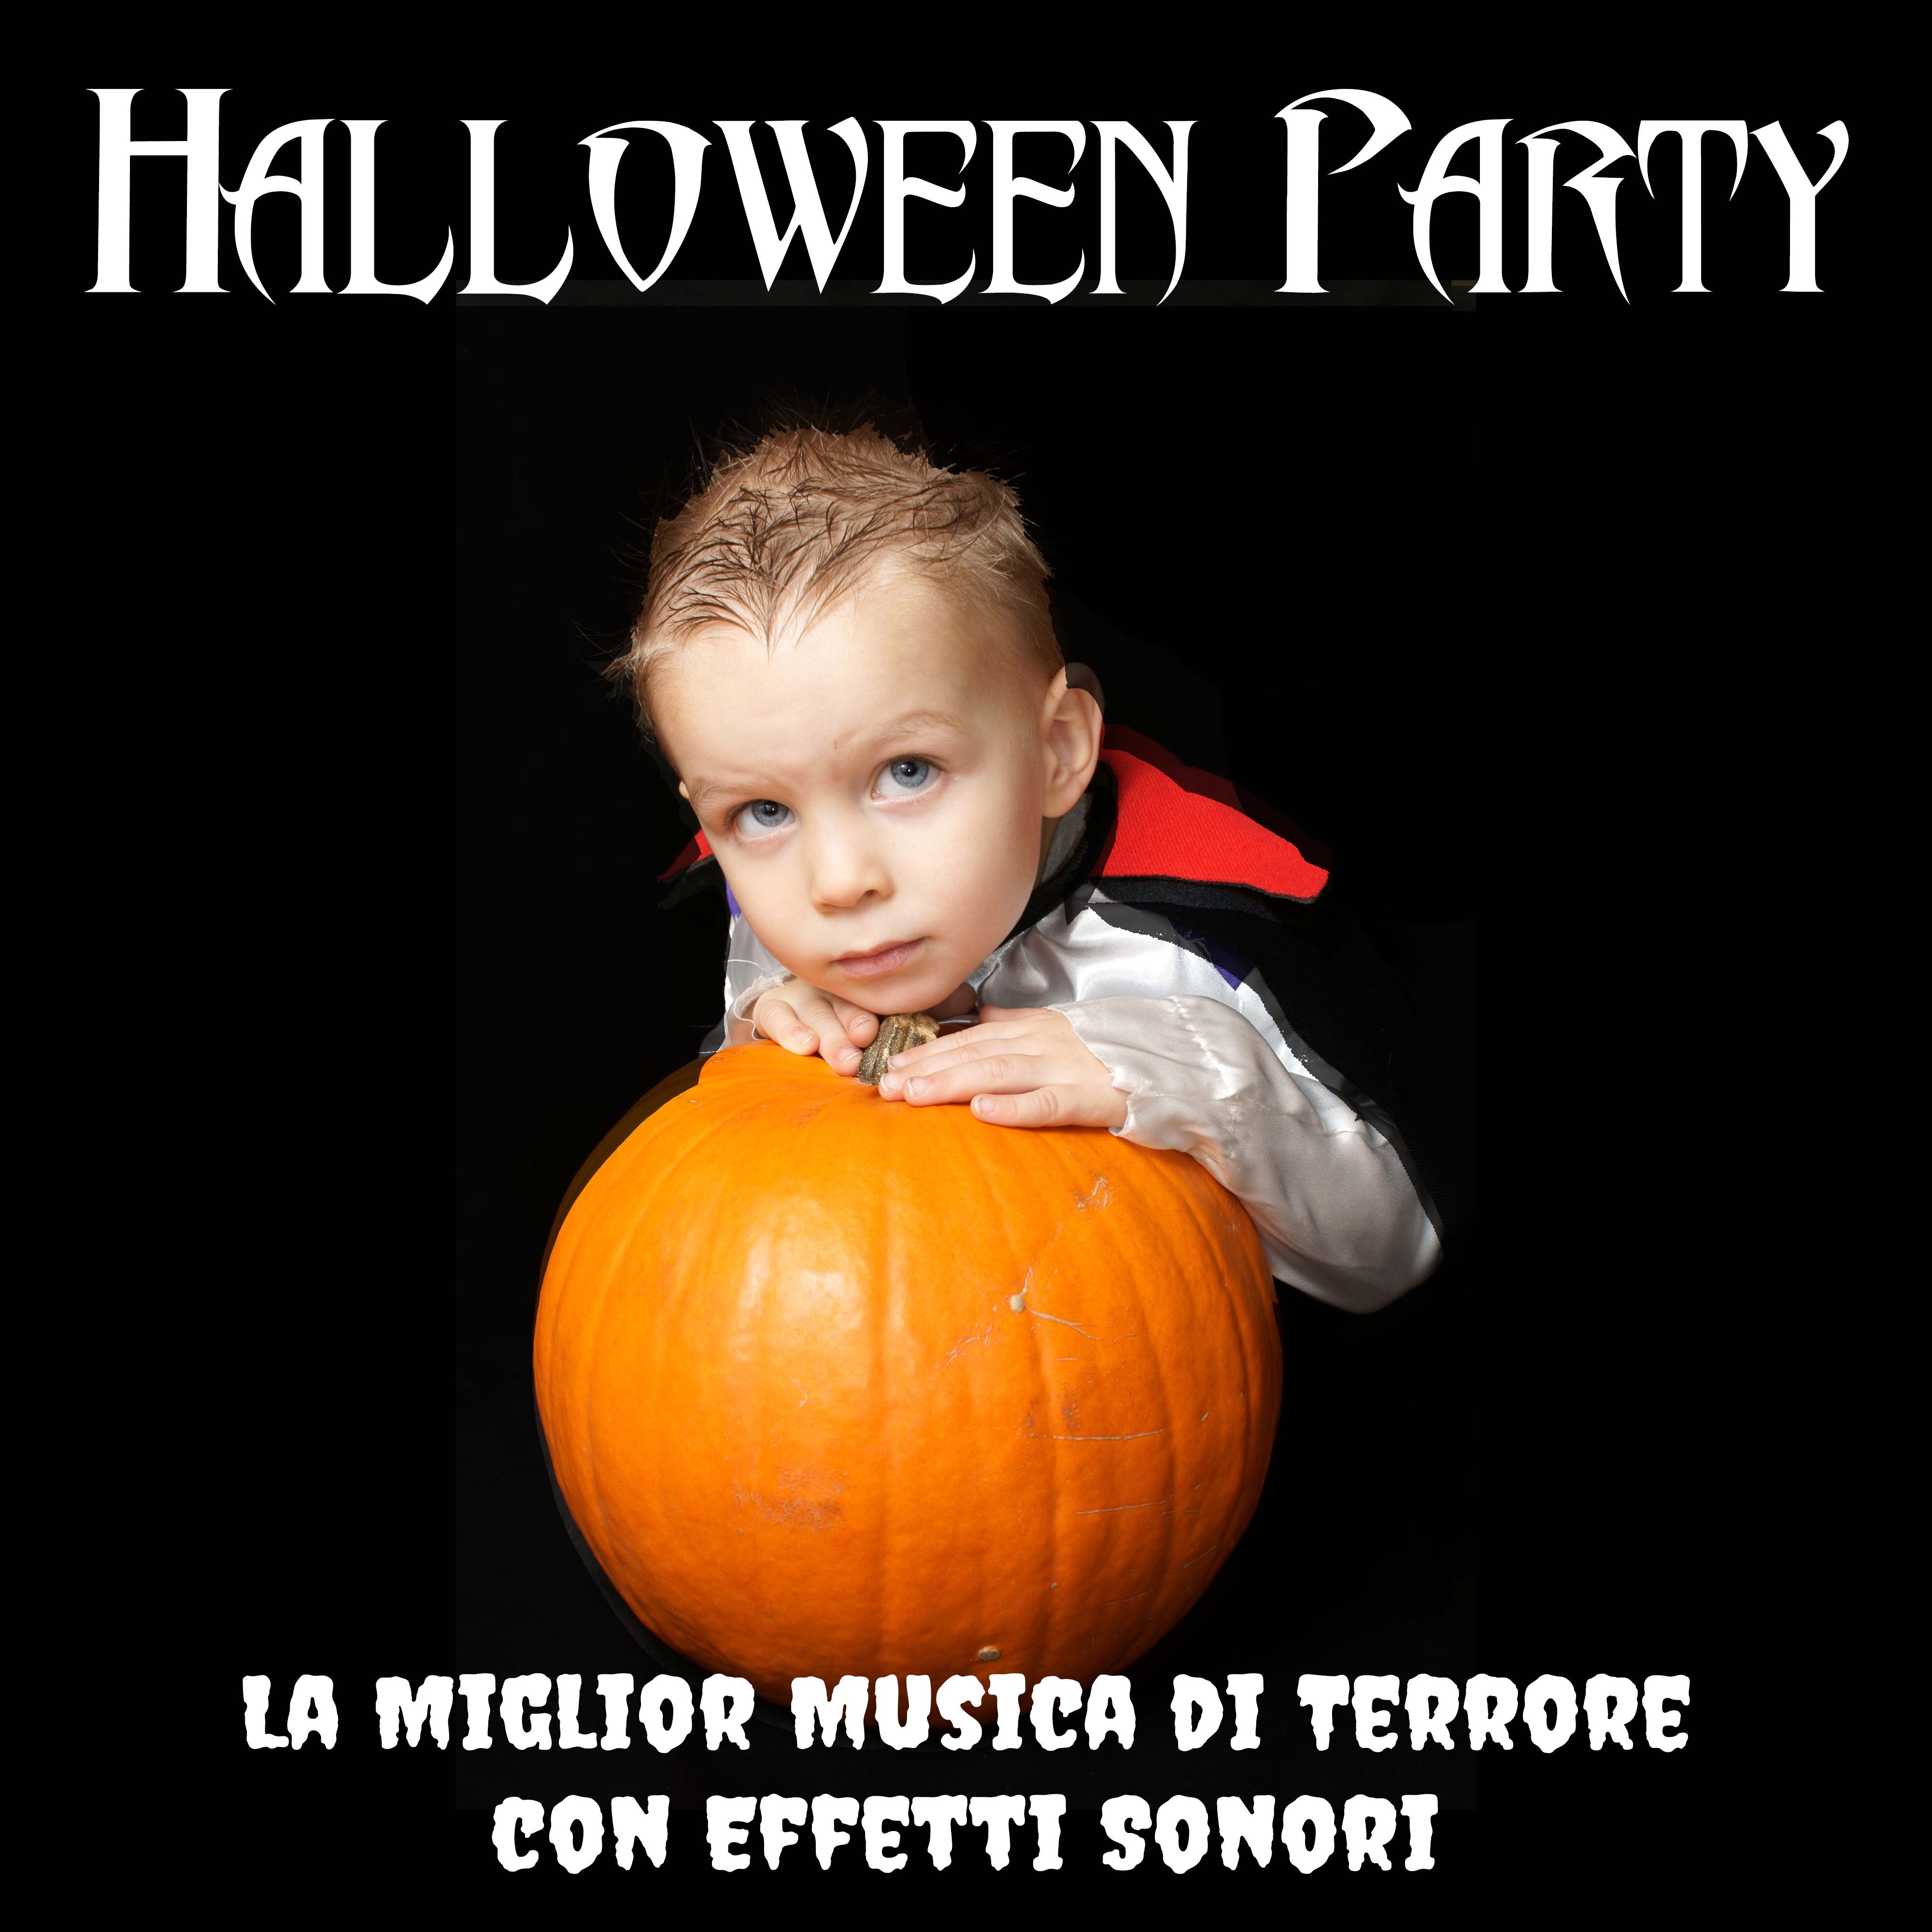 Halloween Party - La Miglior Musica di Terrore con Effetti Sonori (Rumori, Scricchioli, Grida, Ululati di Fantasmi)